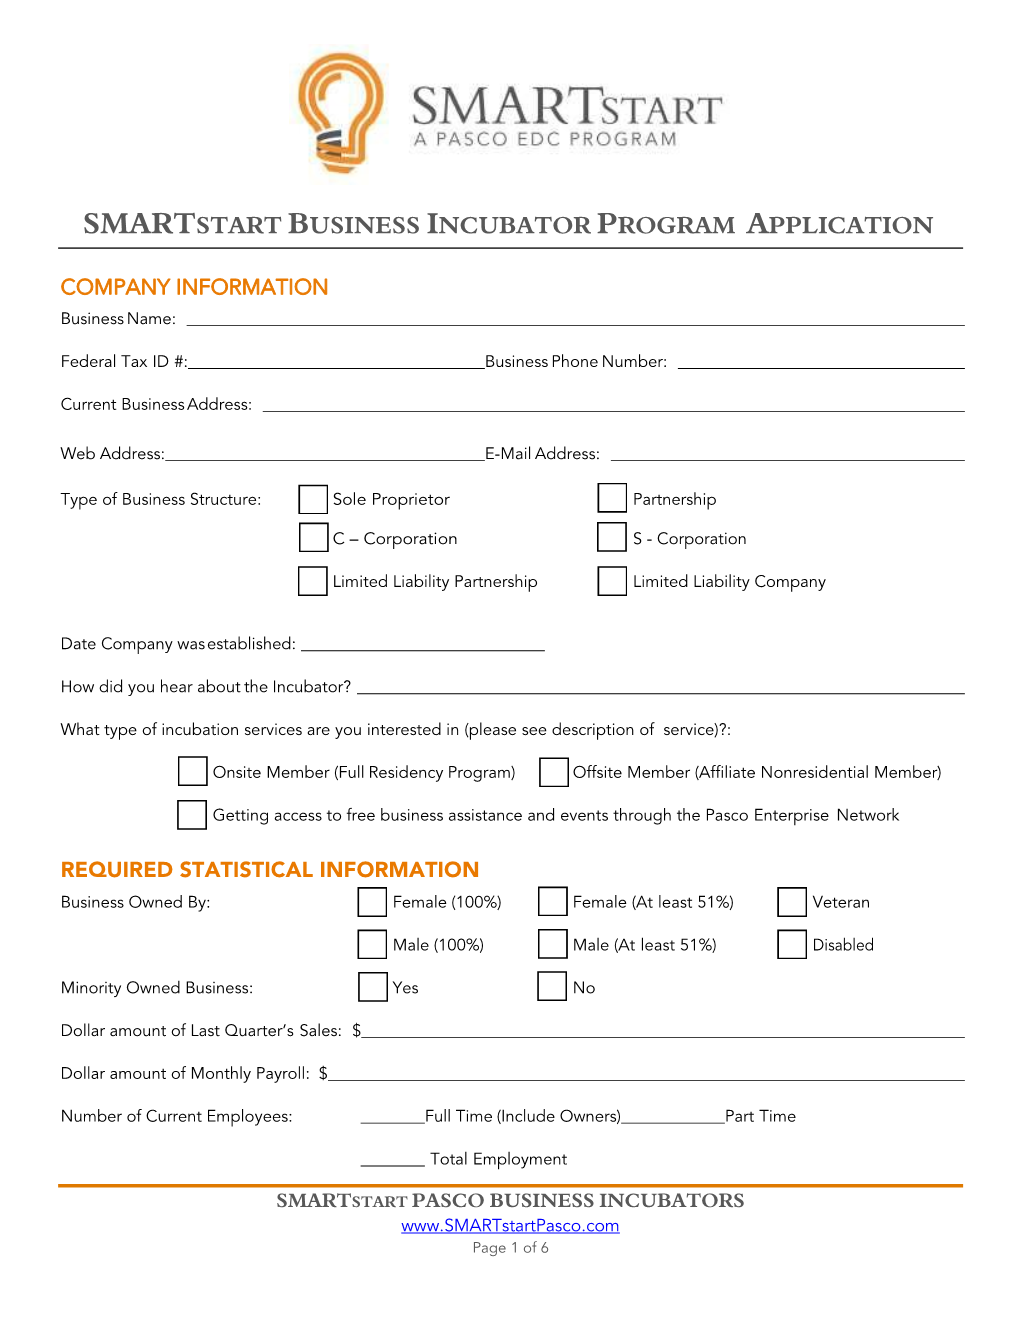 Smartstart Business Incubator Program Application